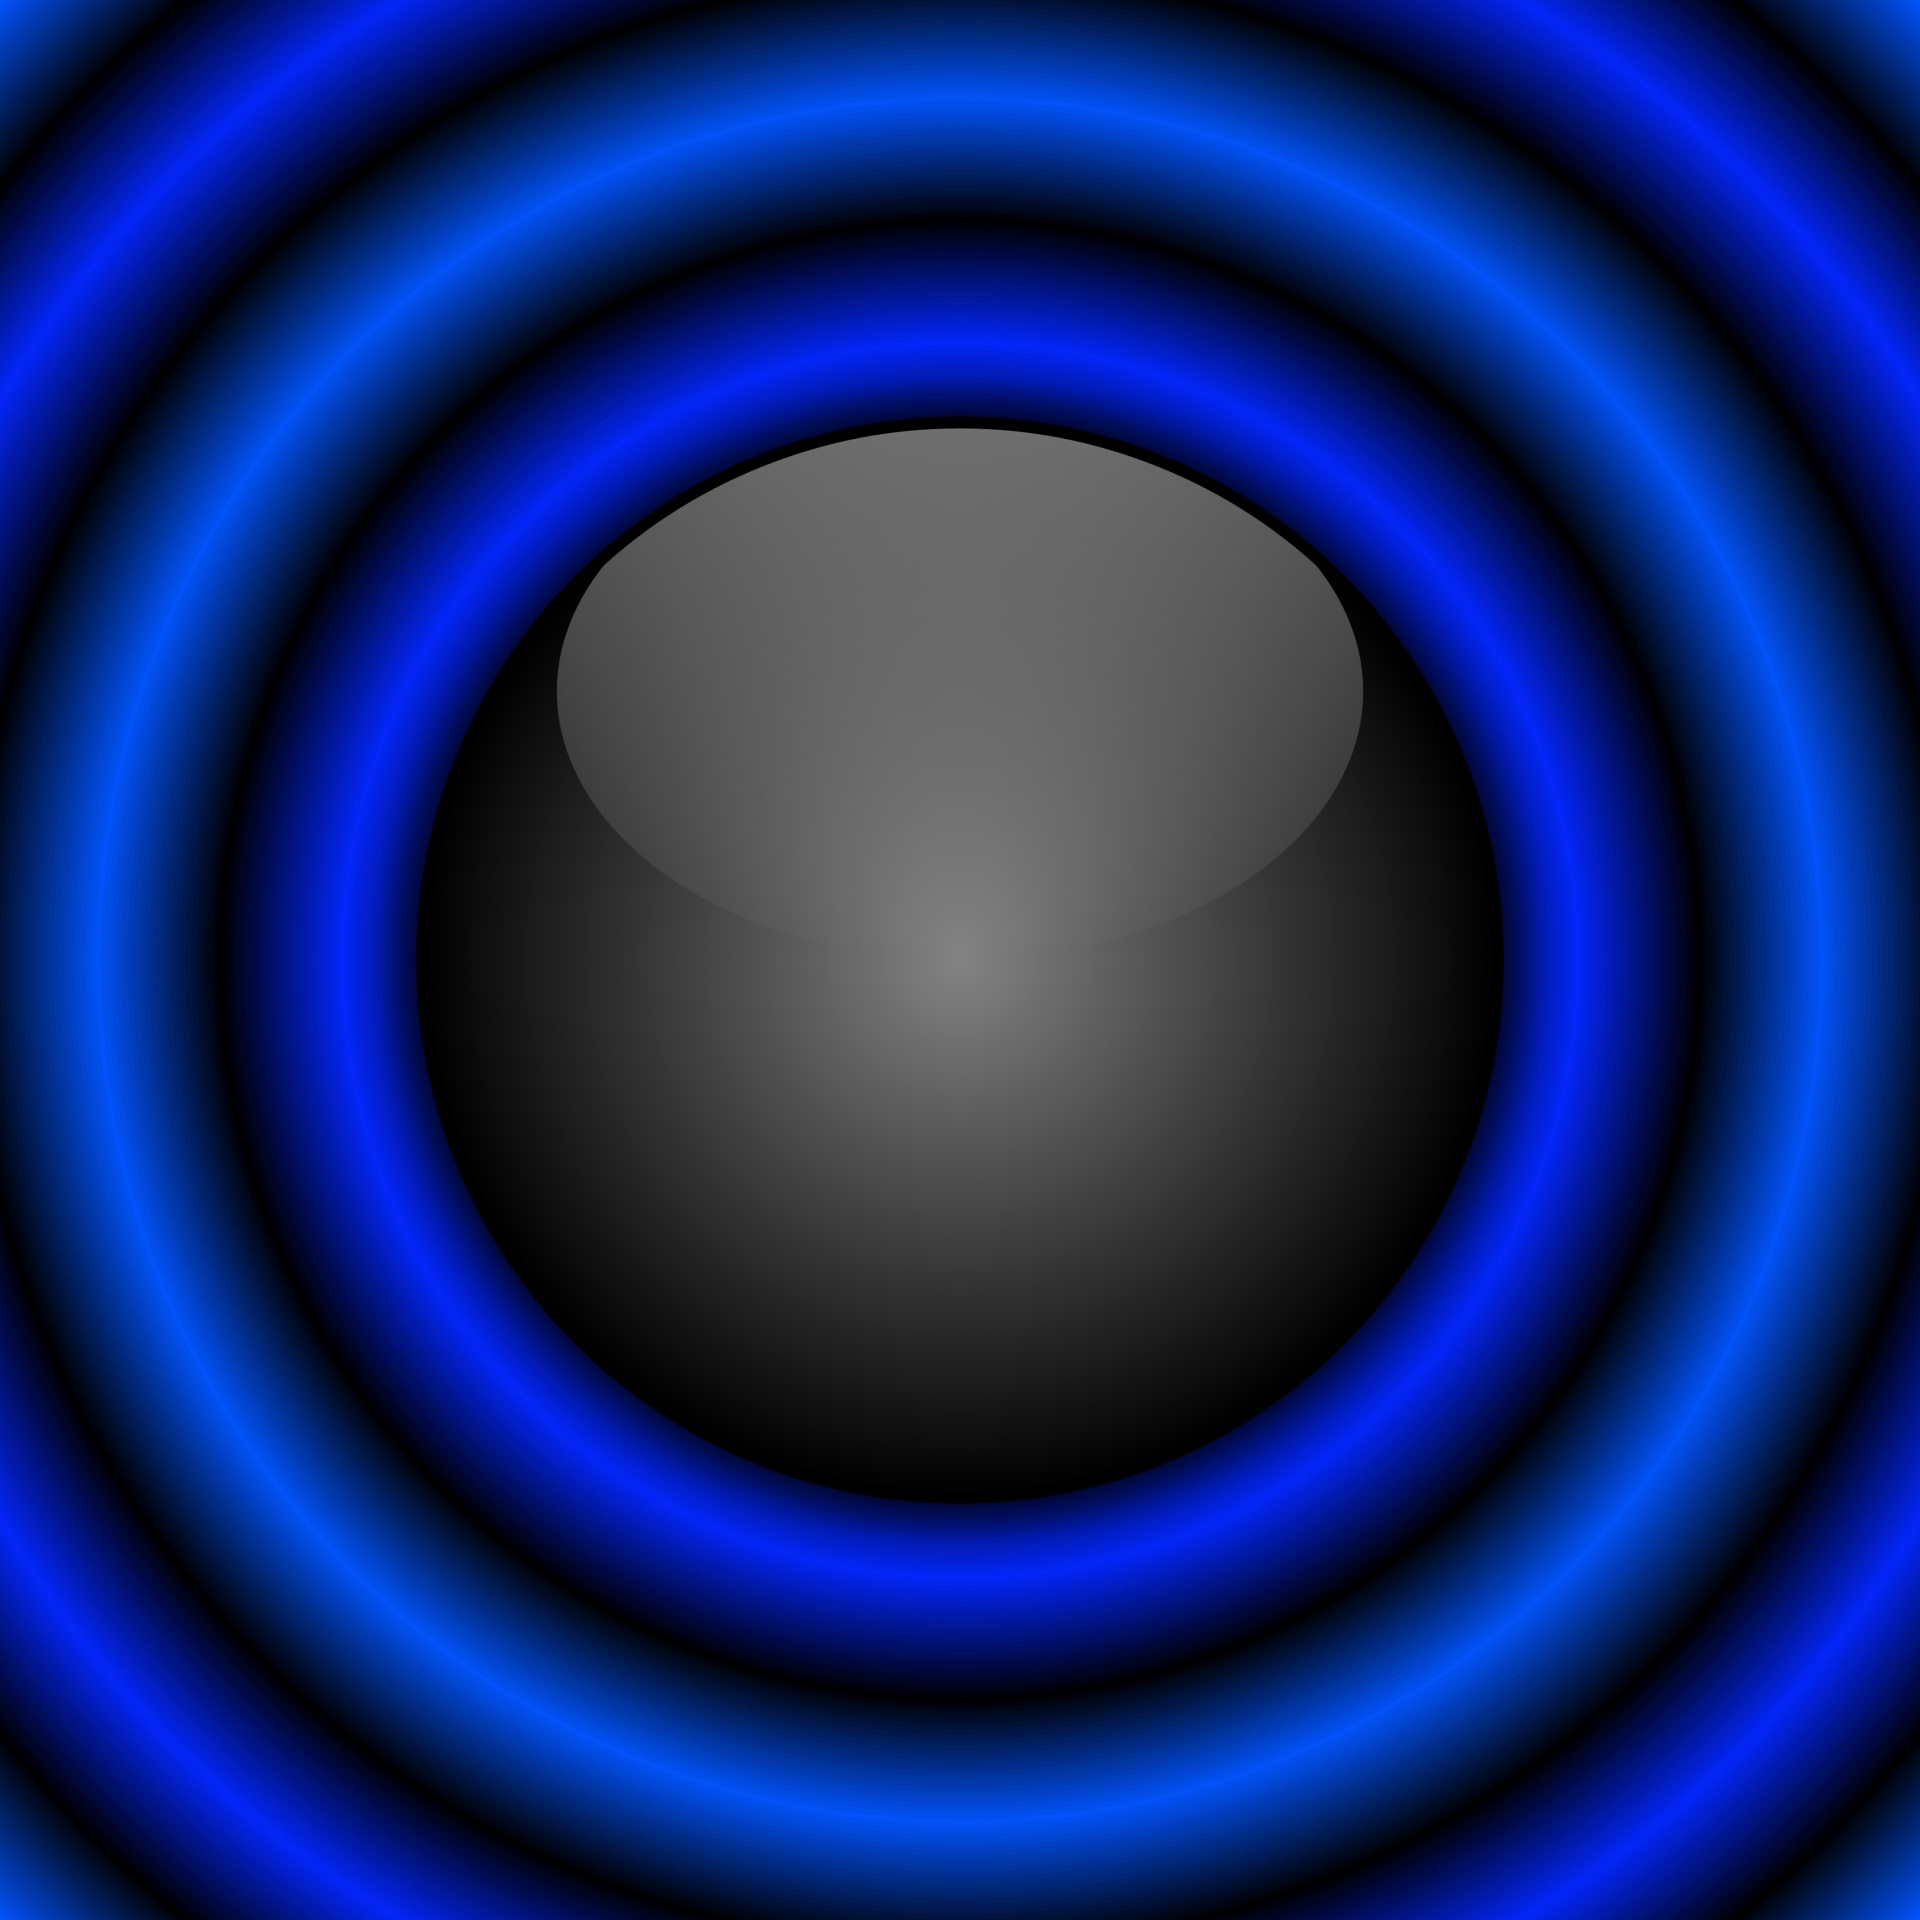 Zwarte bal met blauwe ringen